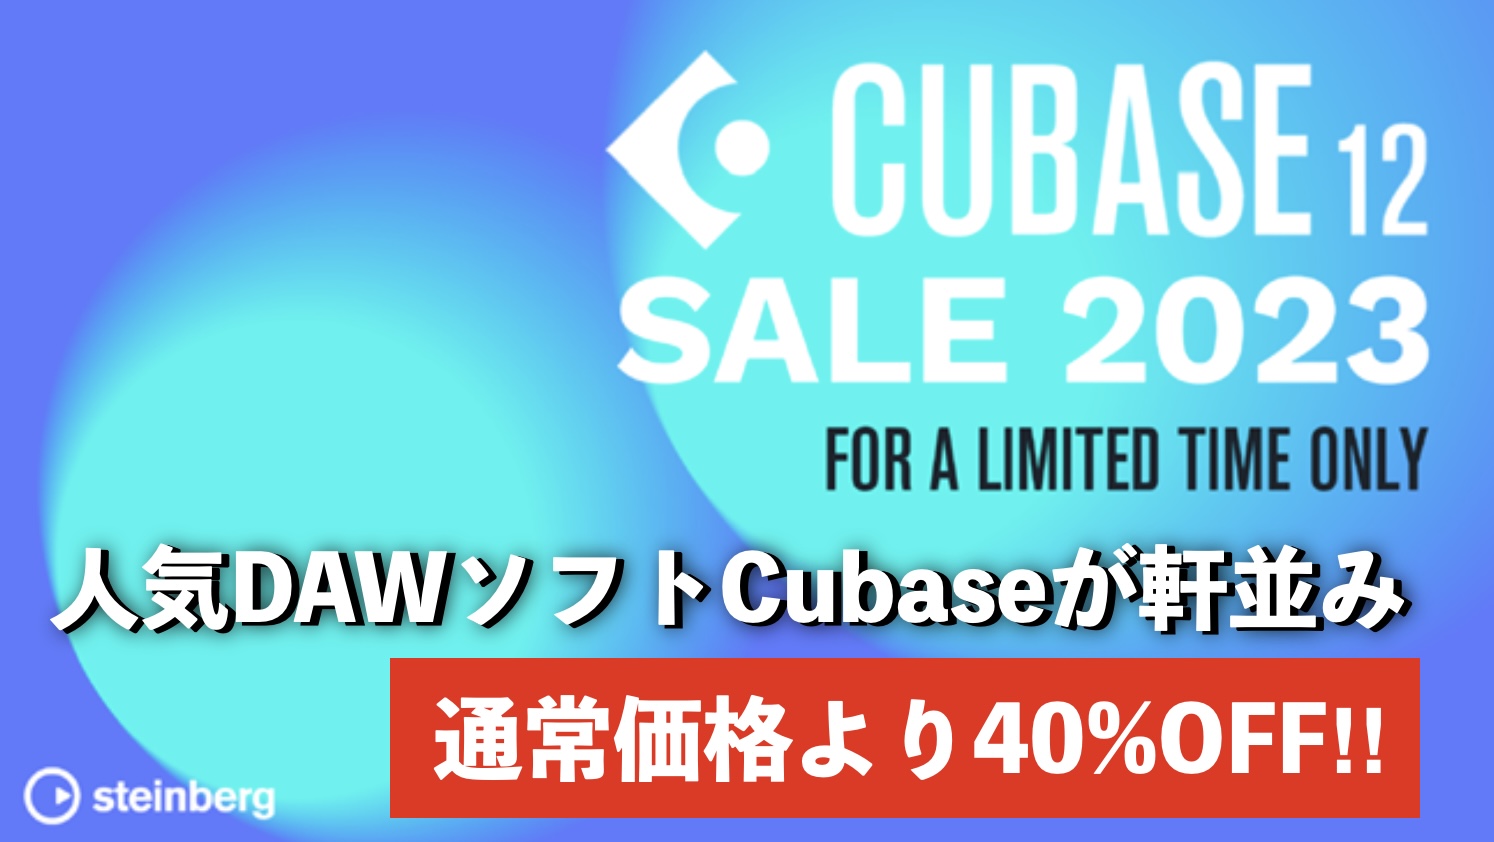 Cubase 12が今だけお得に購入できる、また、プラグインが無償でもらえるキャンペーンが同時開催中です。